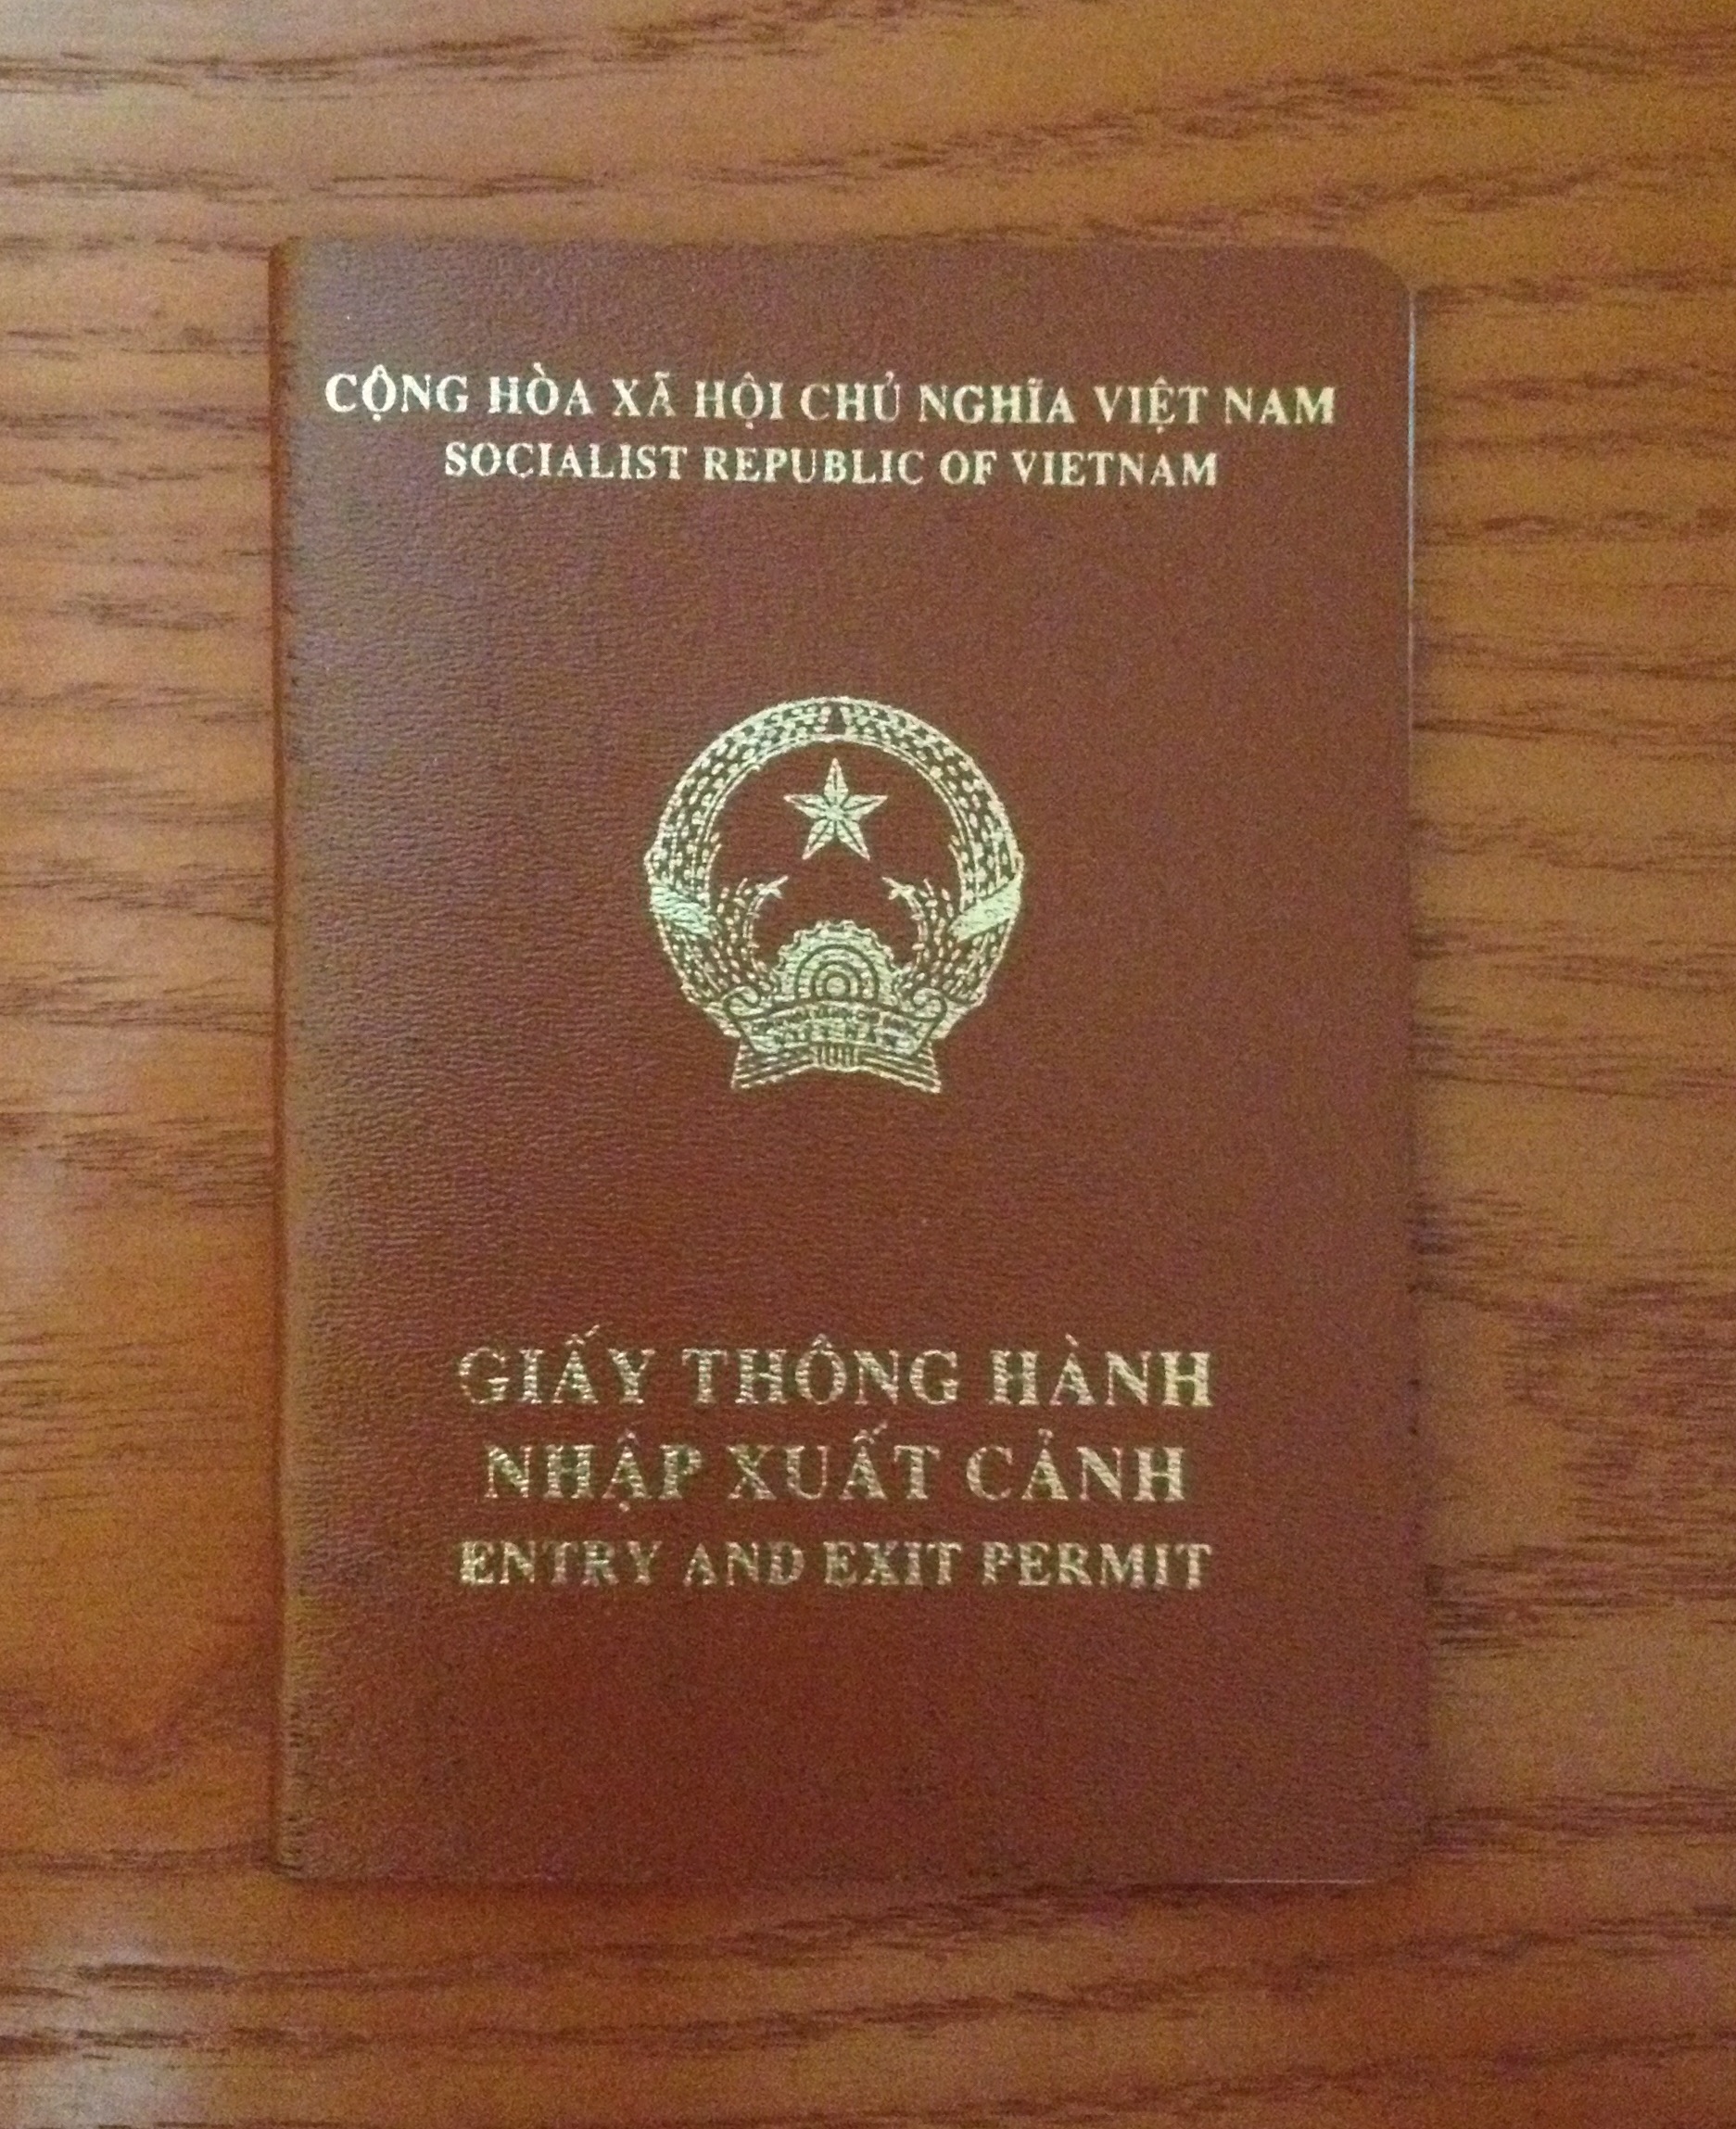 Hướng dẫn cấp Giấy thông hành biên giới cho công dân Việt Nam sang Lào